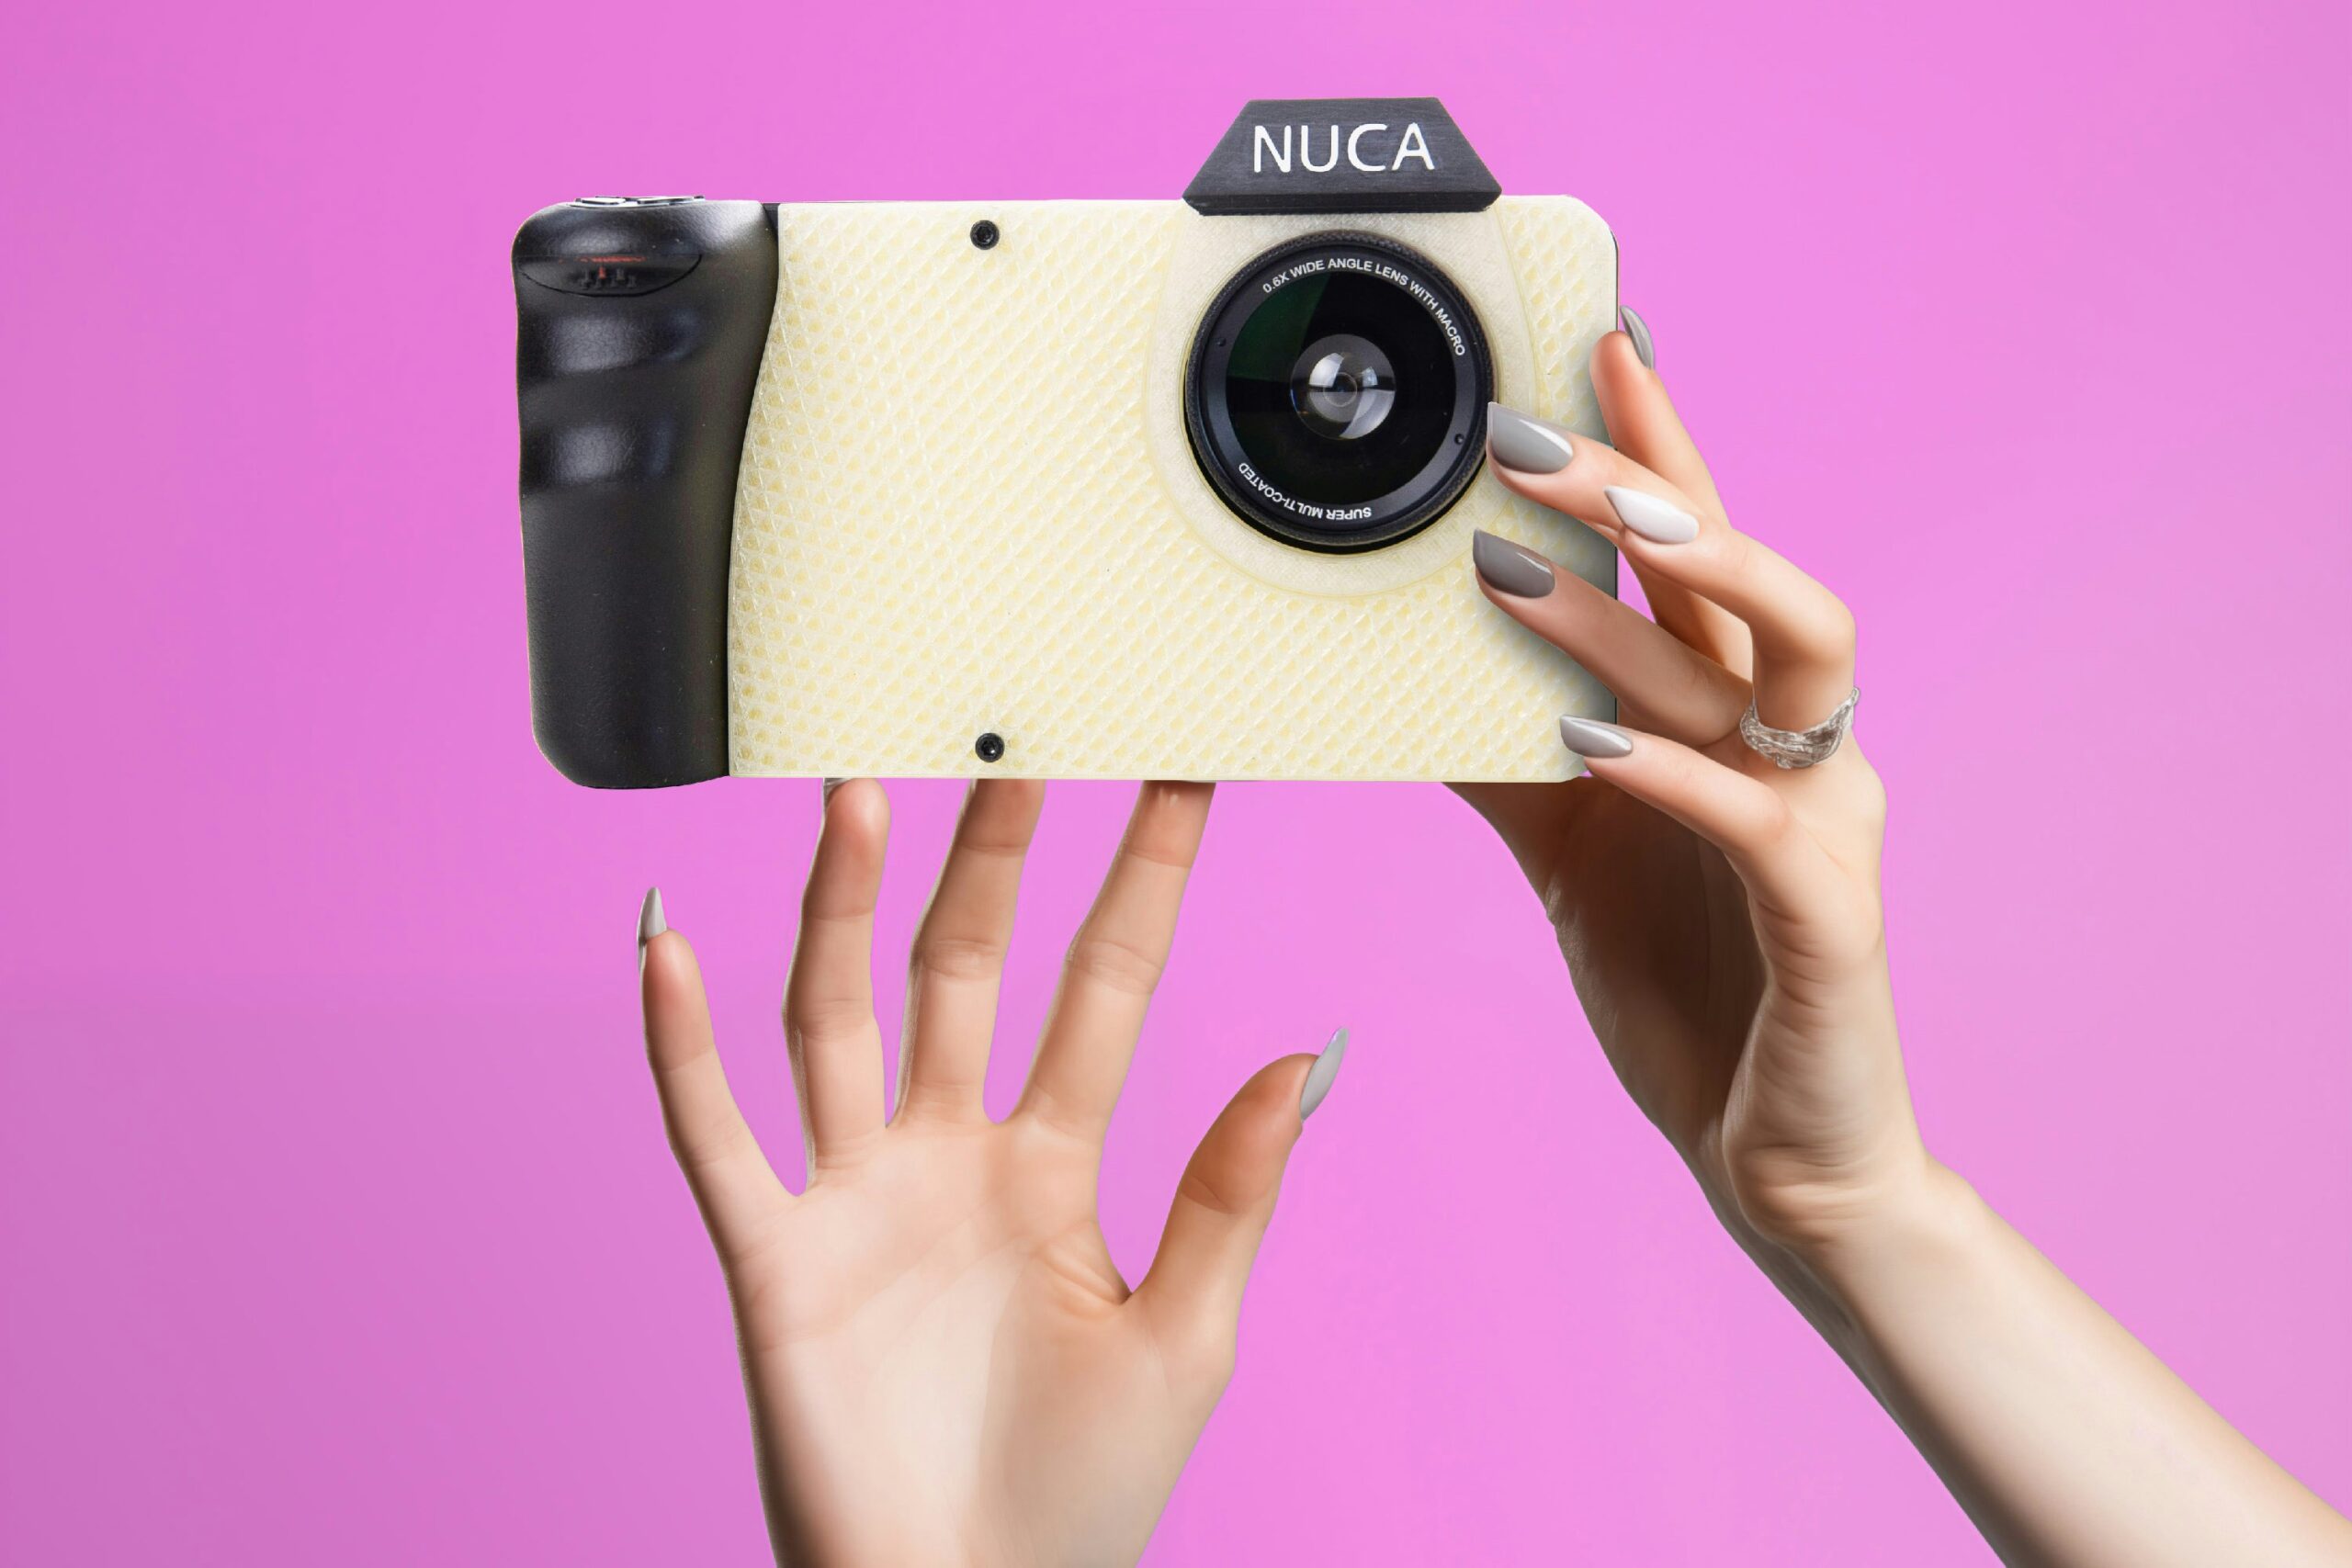 O nuca é uma câmera de nudes funcional às câmeras de impressão online. (foto: divulgação/nuca)